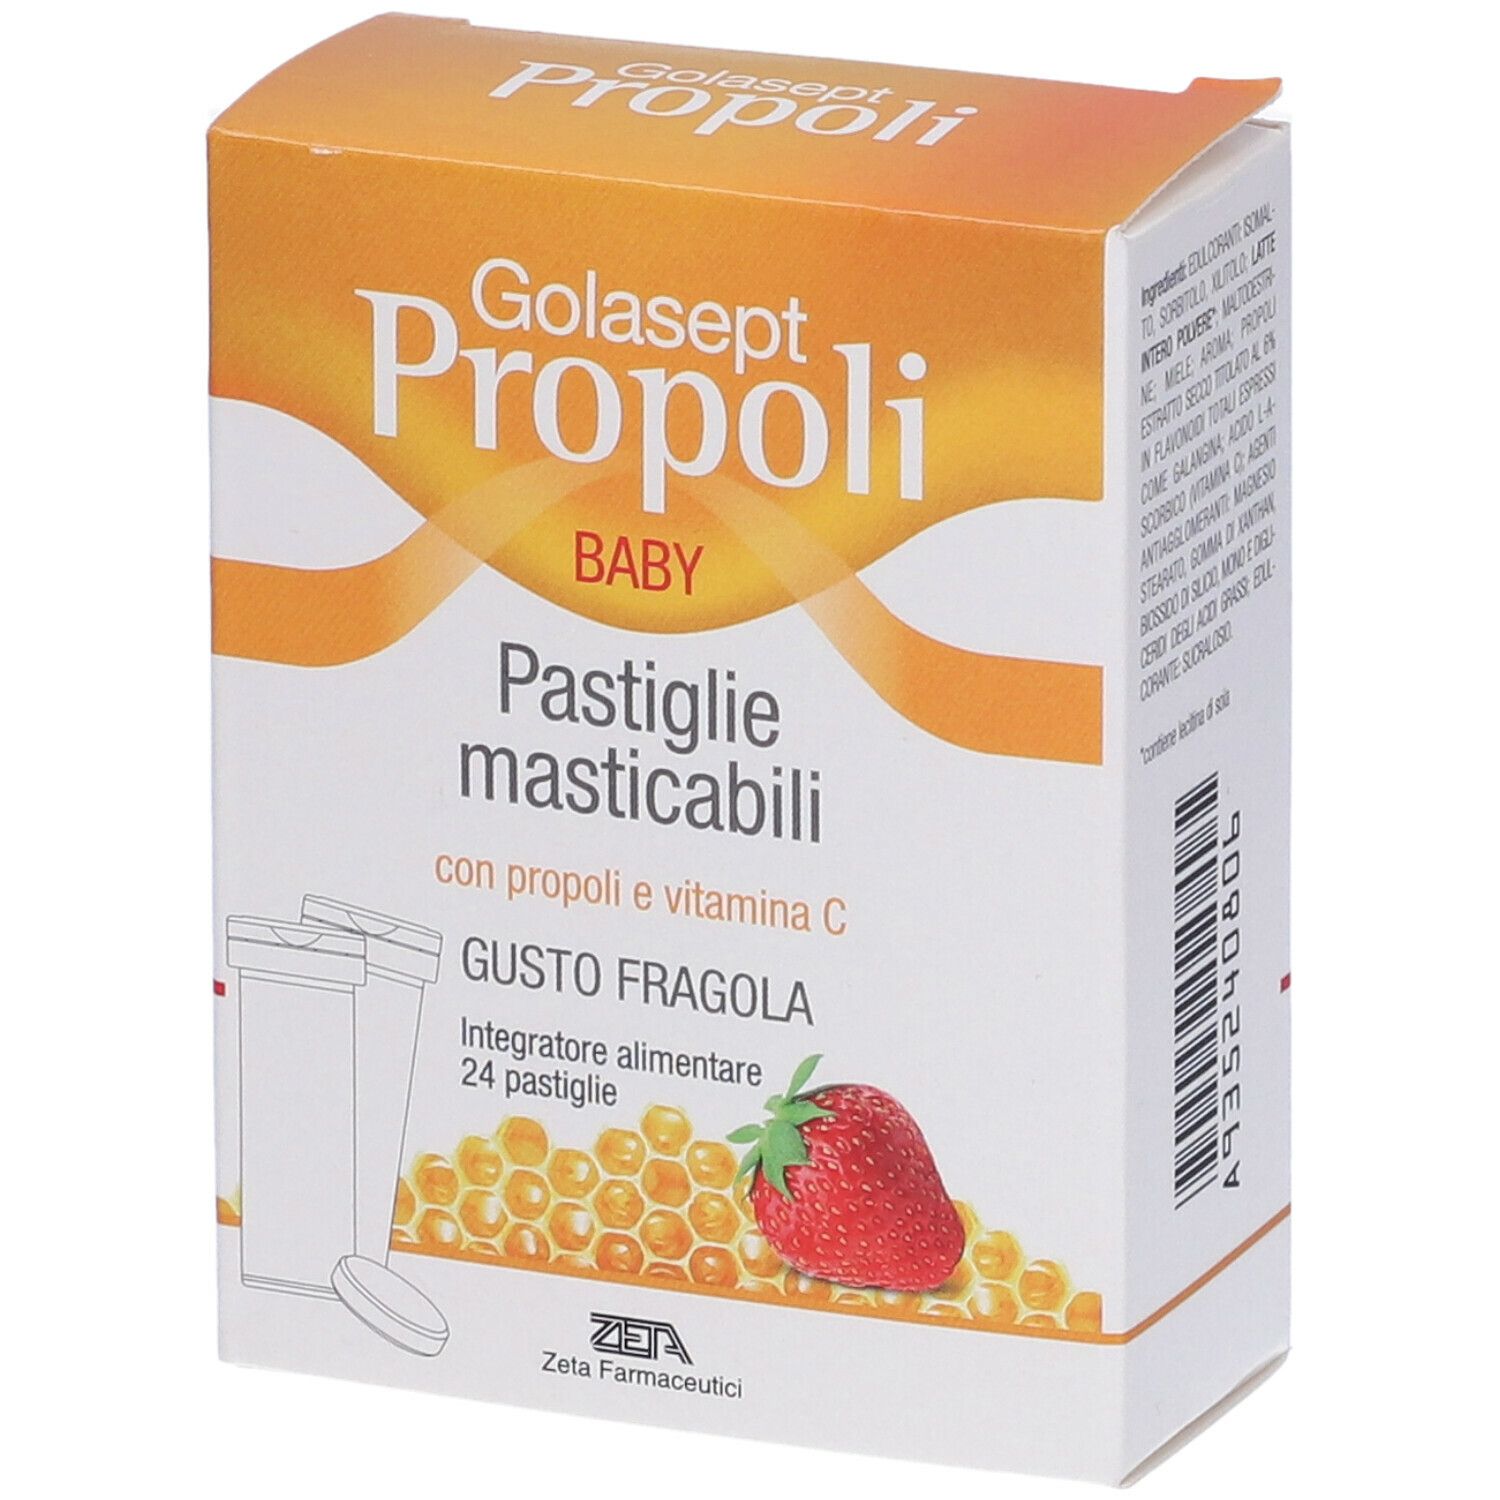 Golasept Propoli Baby Pastiglie Masticabili